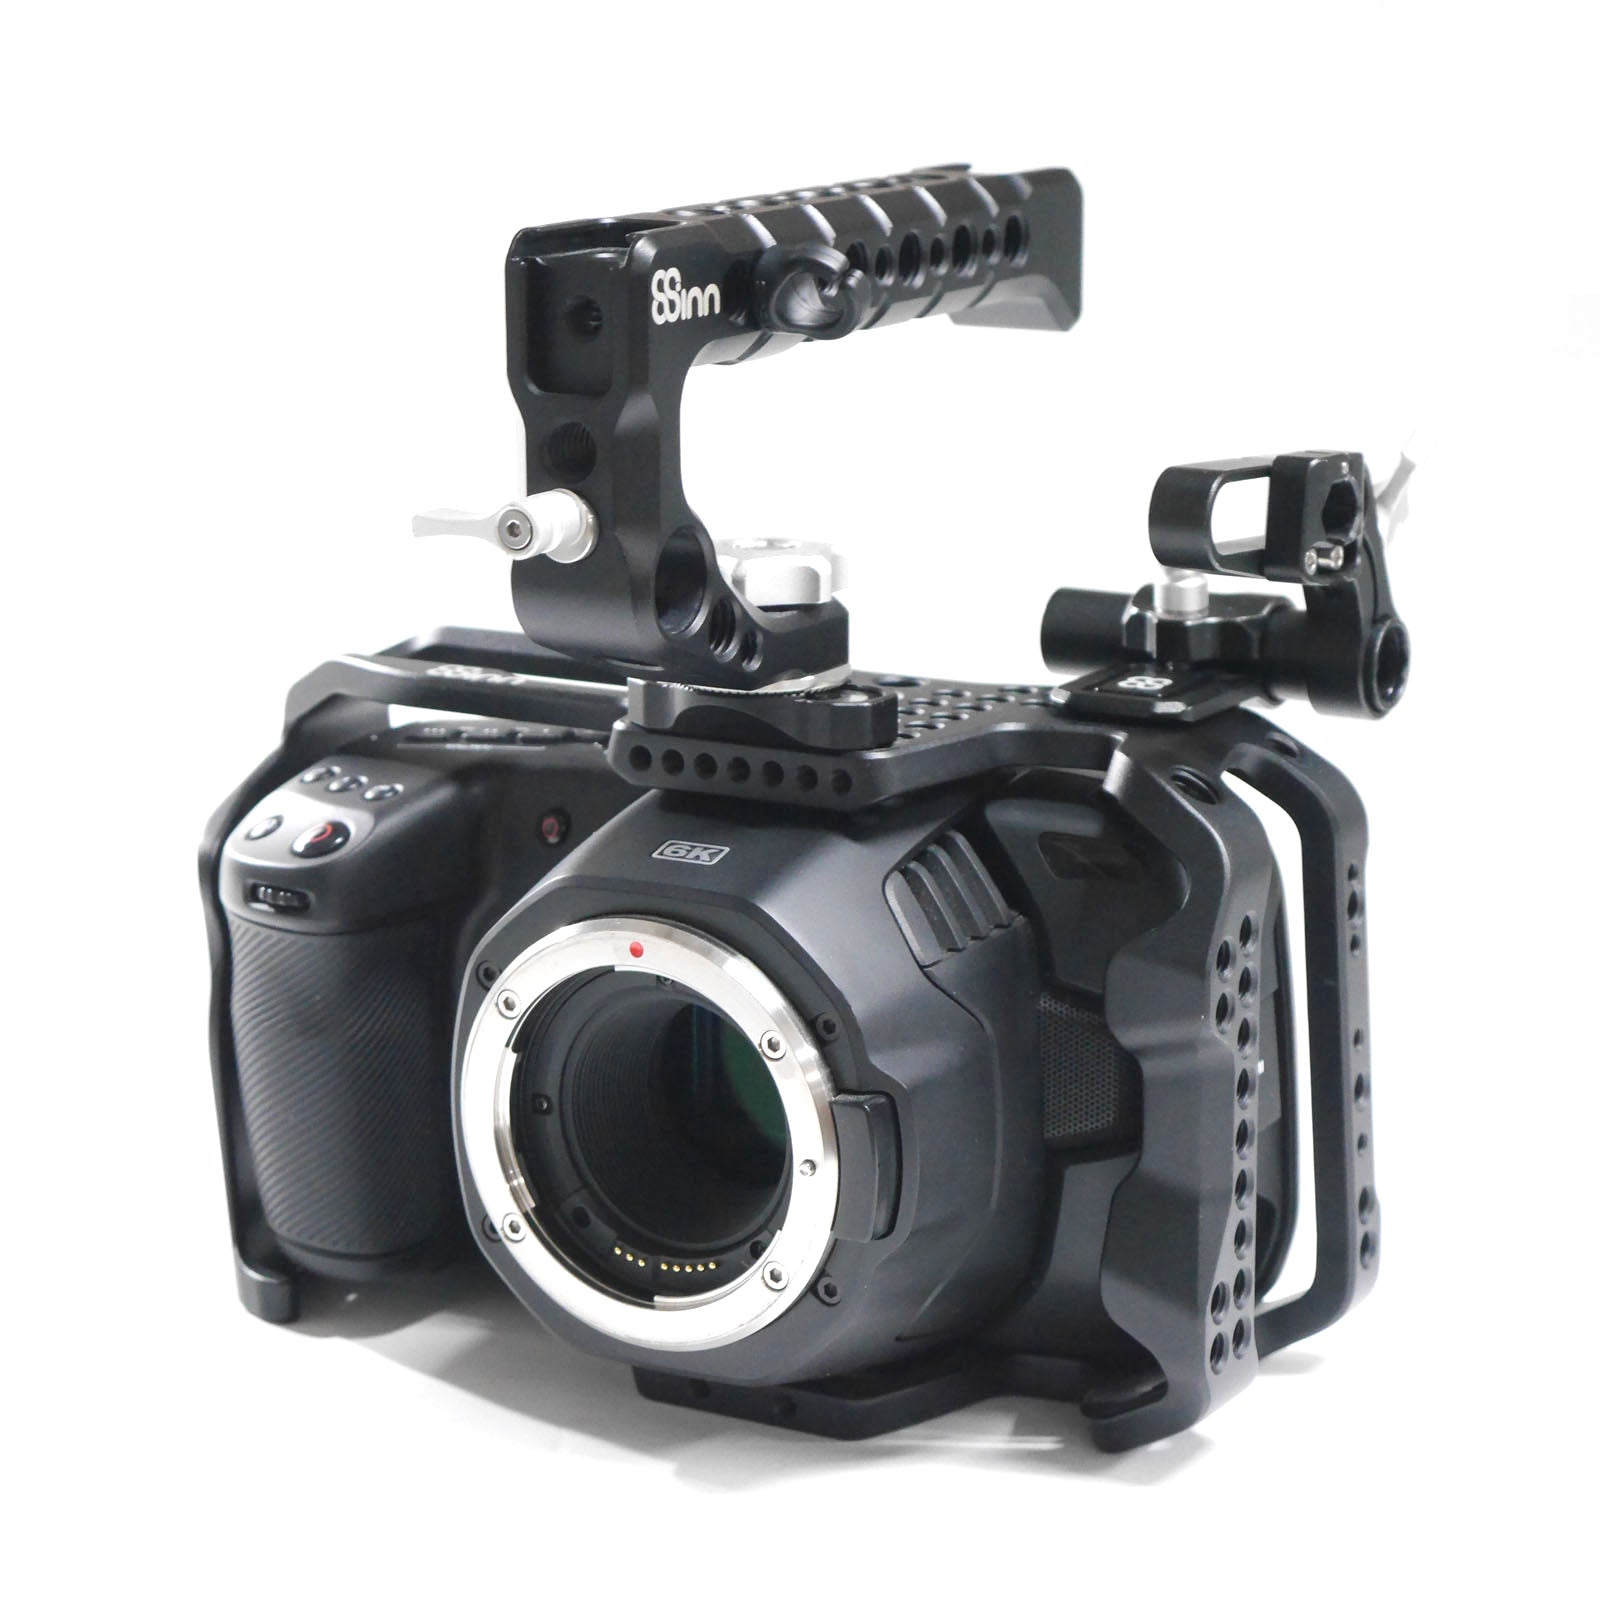 Blackmagic Design(ブラックマジックデザイン) Blackmagic Pocket Cinema Camera 6K 中古品